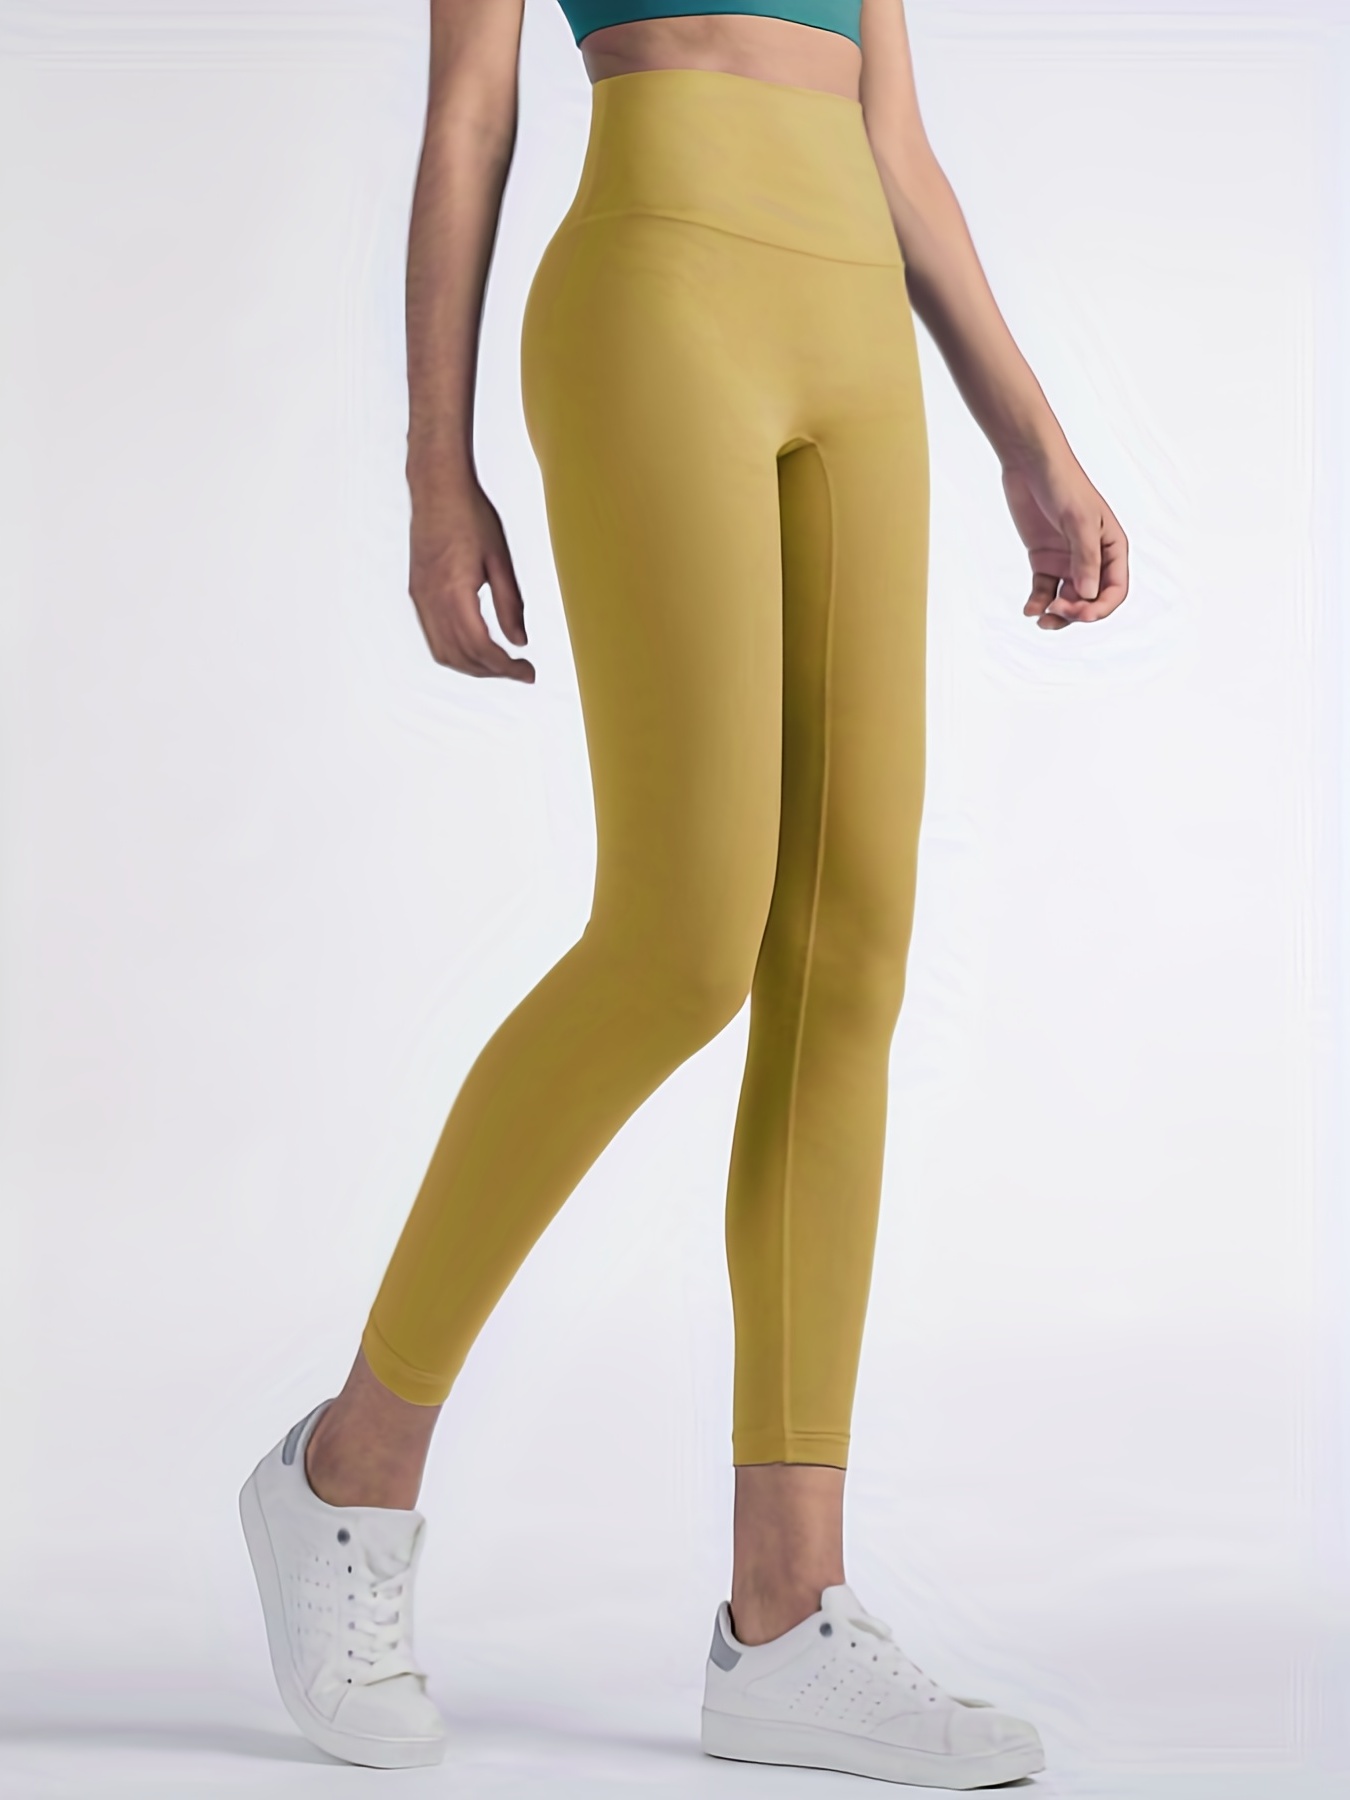 25 Lululemon Leggingshigh-waist Seamless Yoga Pants For Women - Breathable  Spandex Leggings